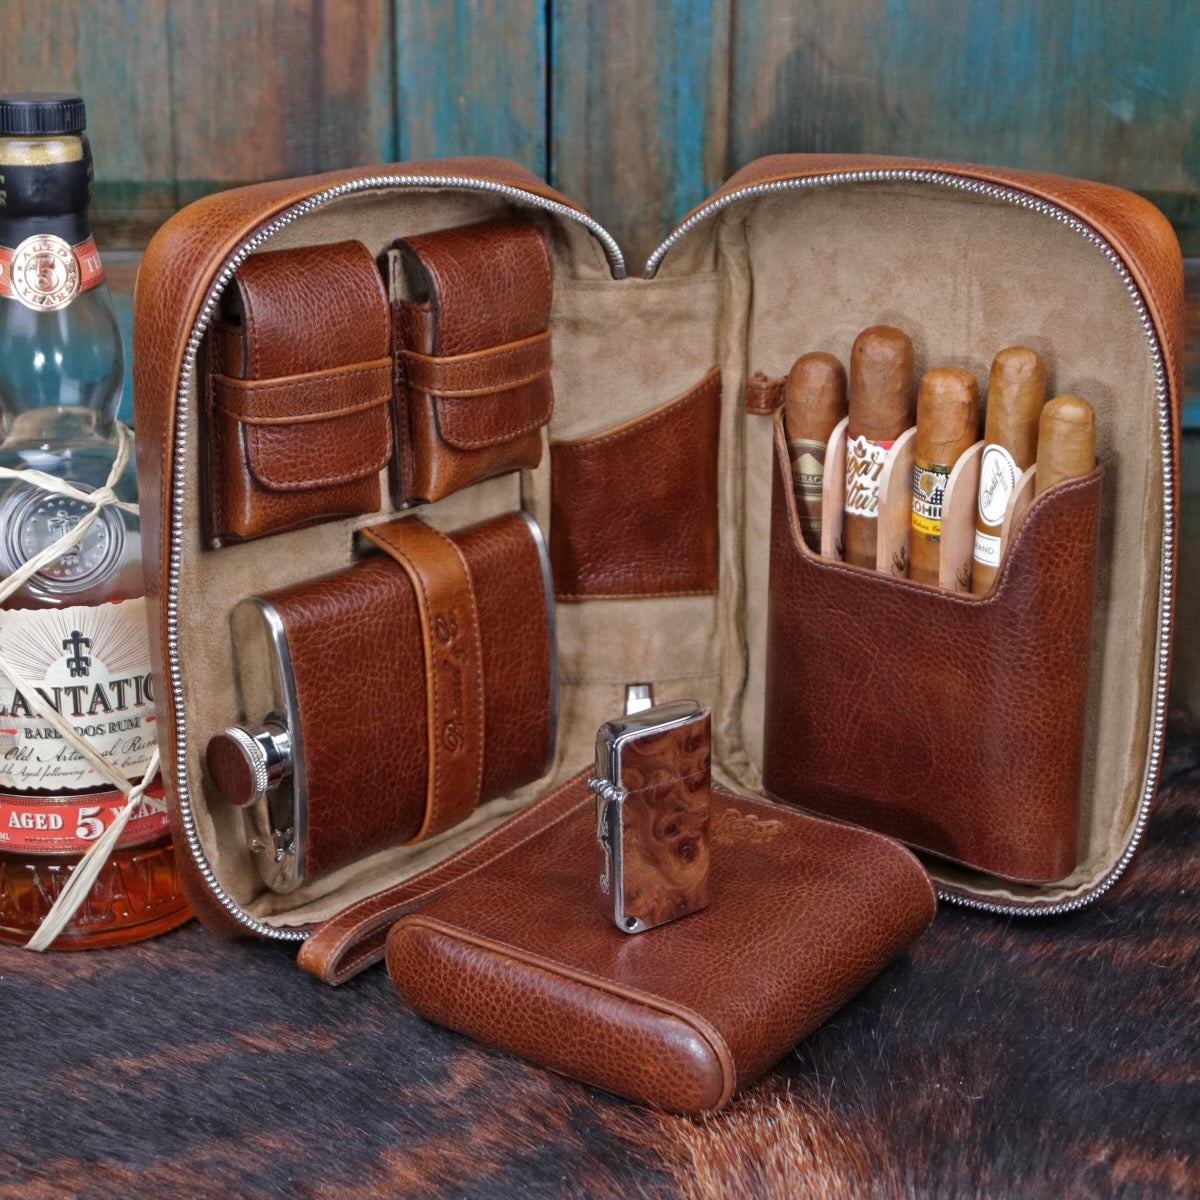 Cognac Leather Cigarette Case, Custom Cigarillo Pouch, Travel